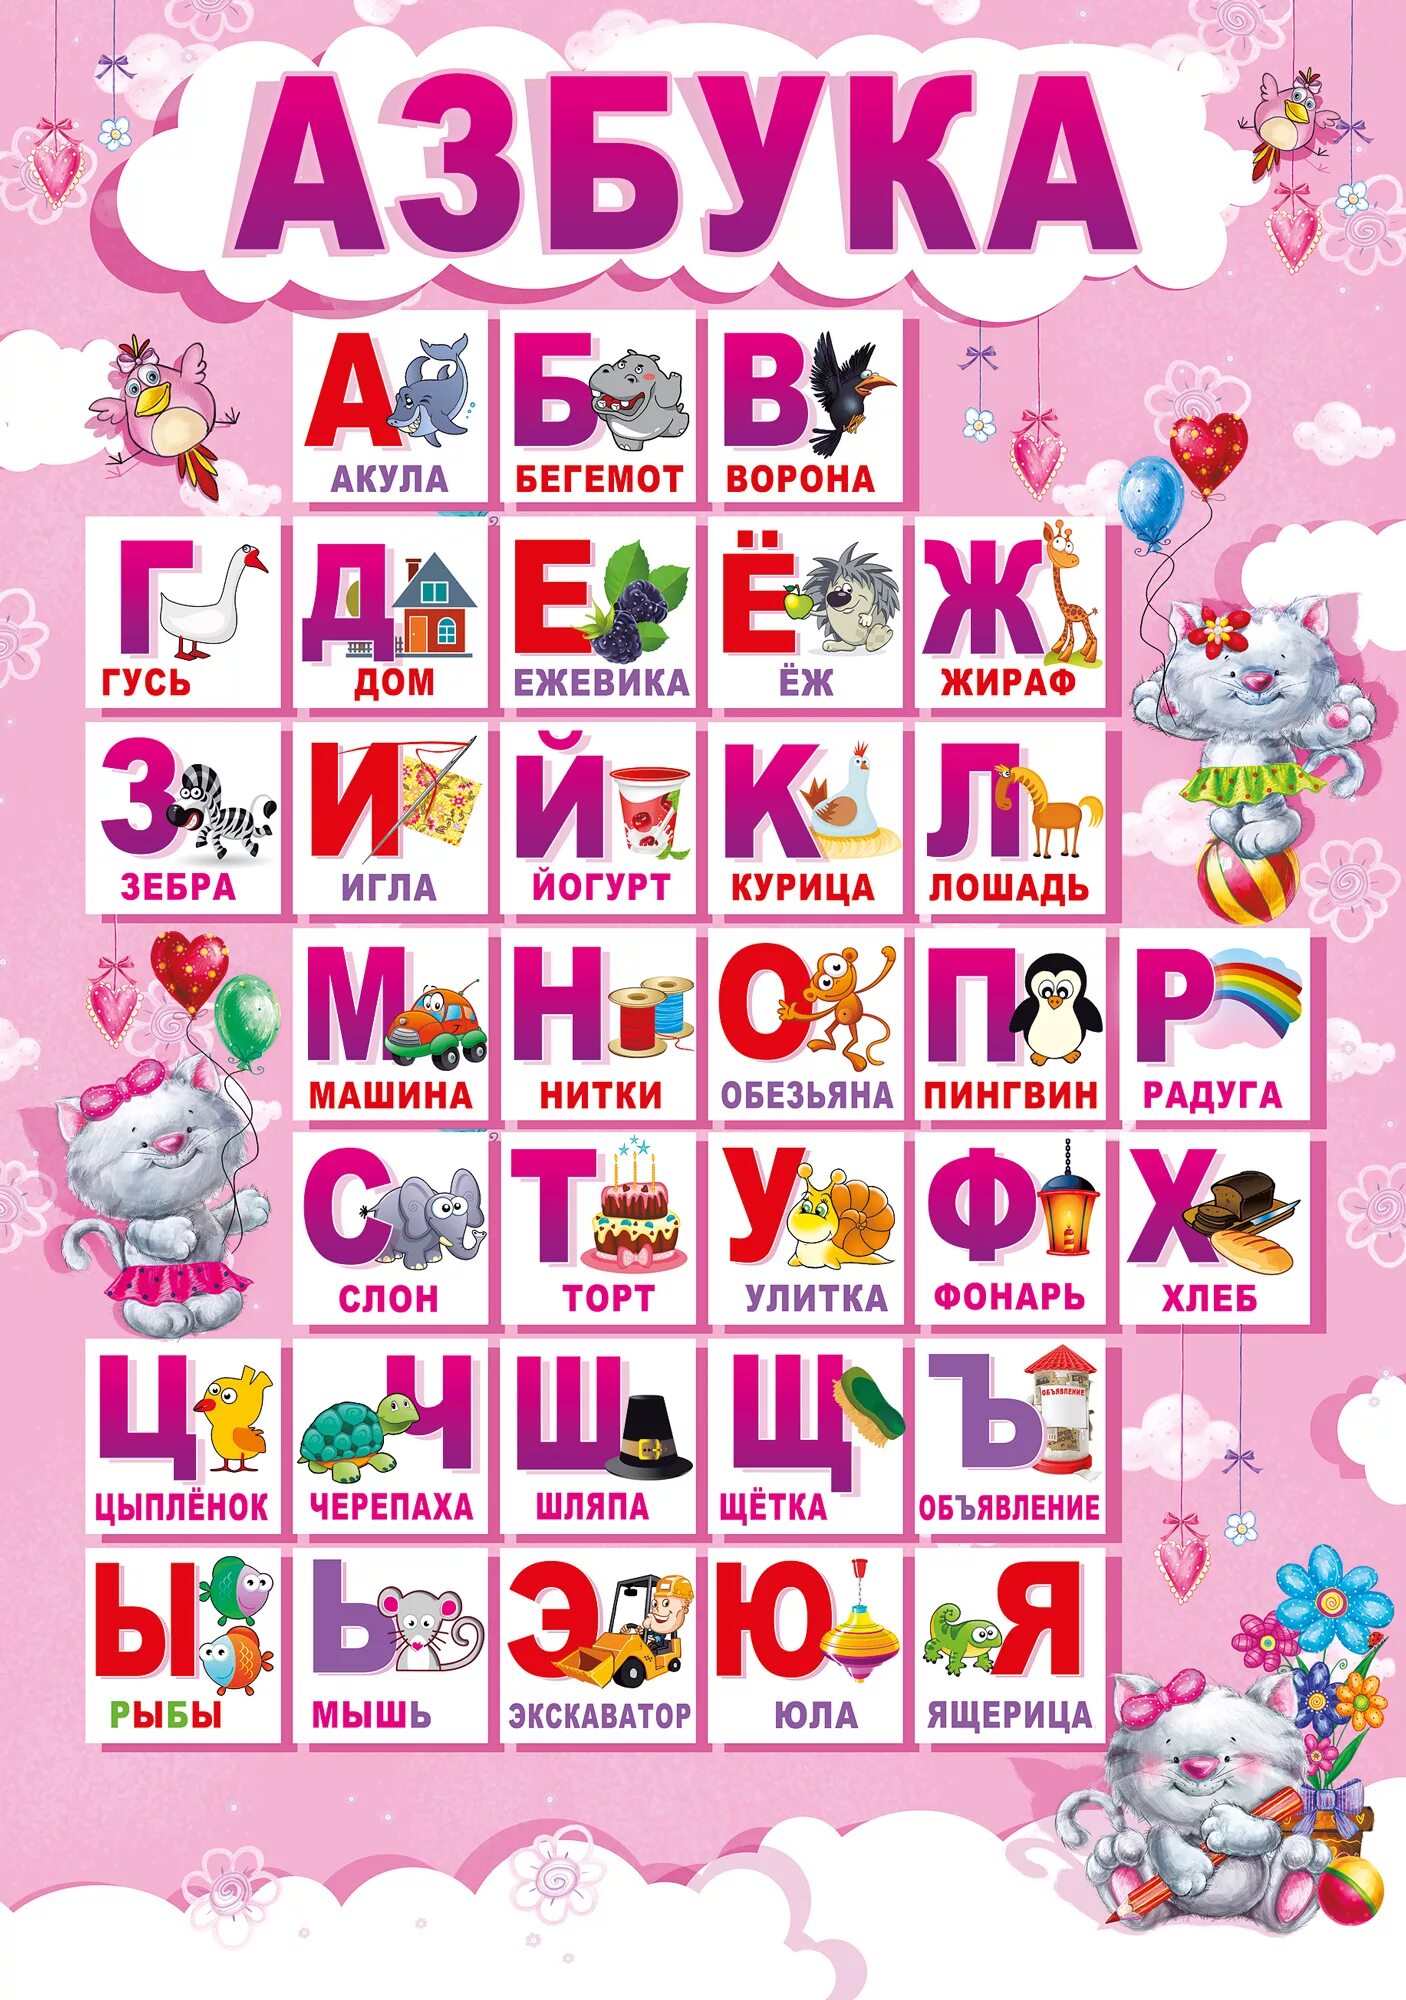 Алфавит для детей. Алфавит "детский". Азбука для дошкольников. Плакат алфавит для детей. Алфавит хороших слов